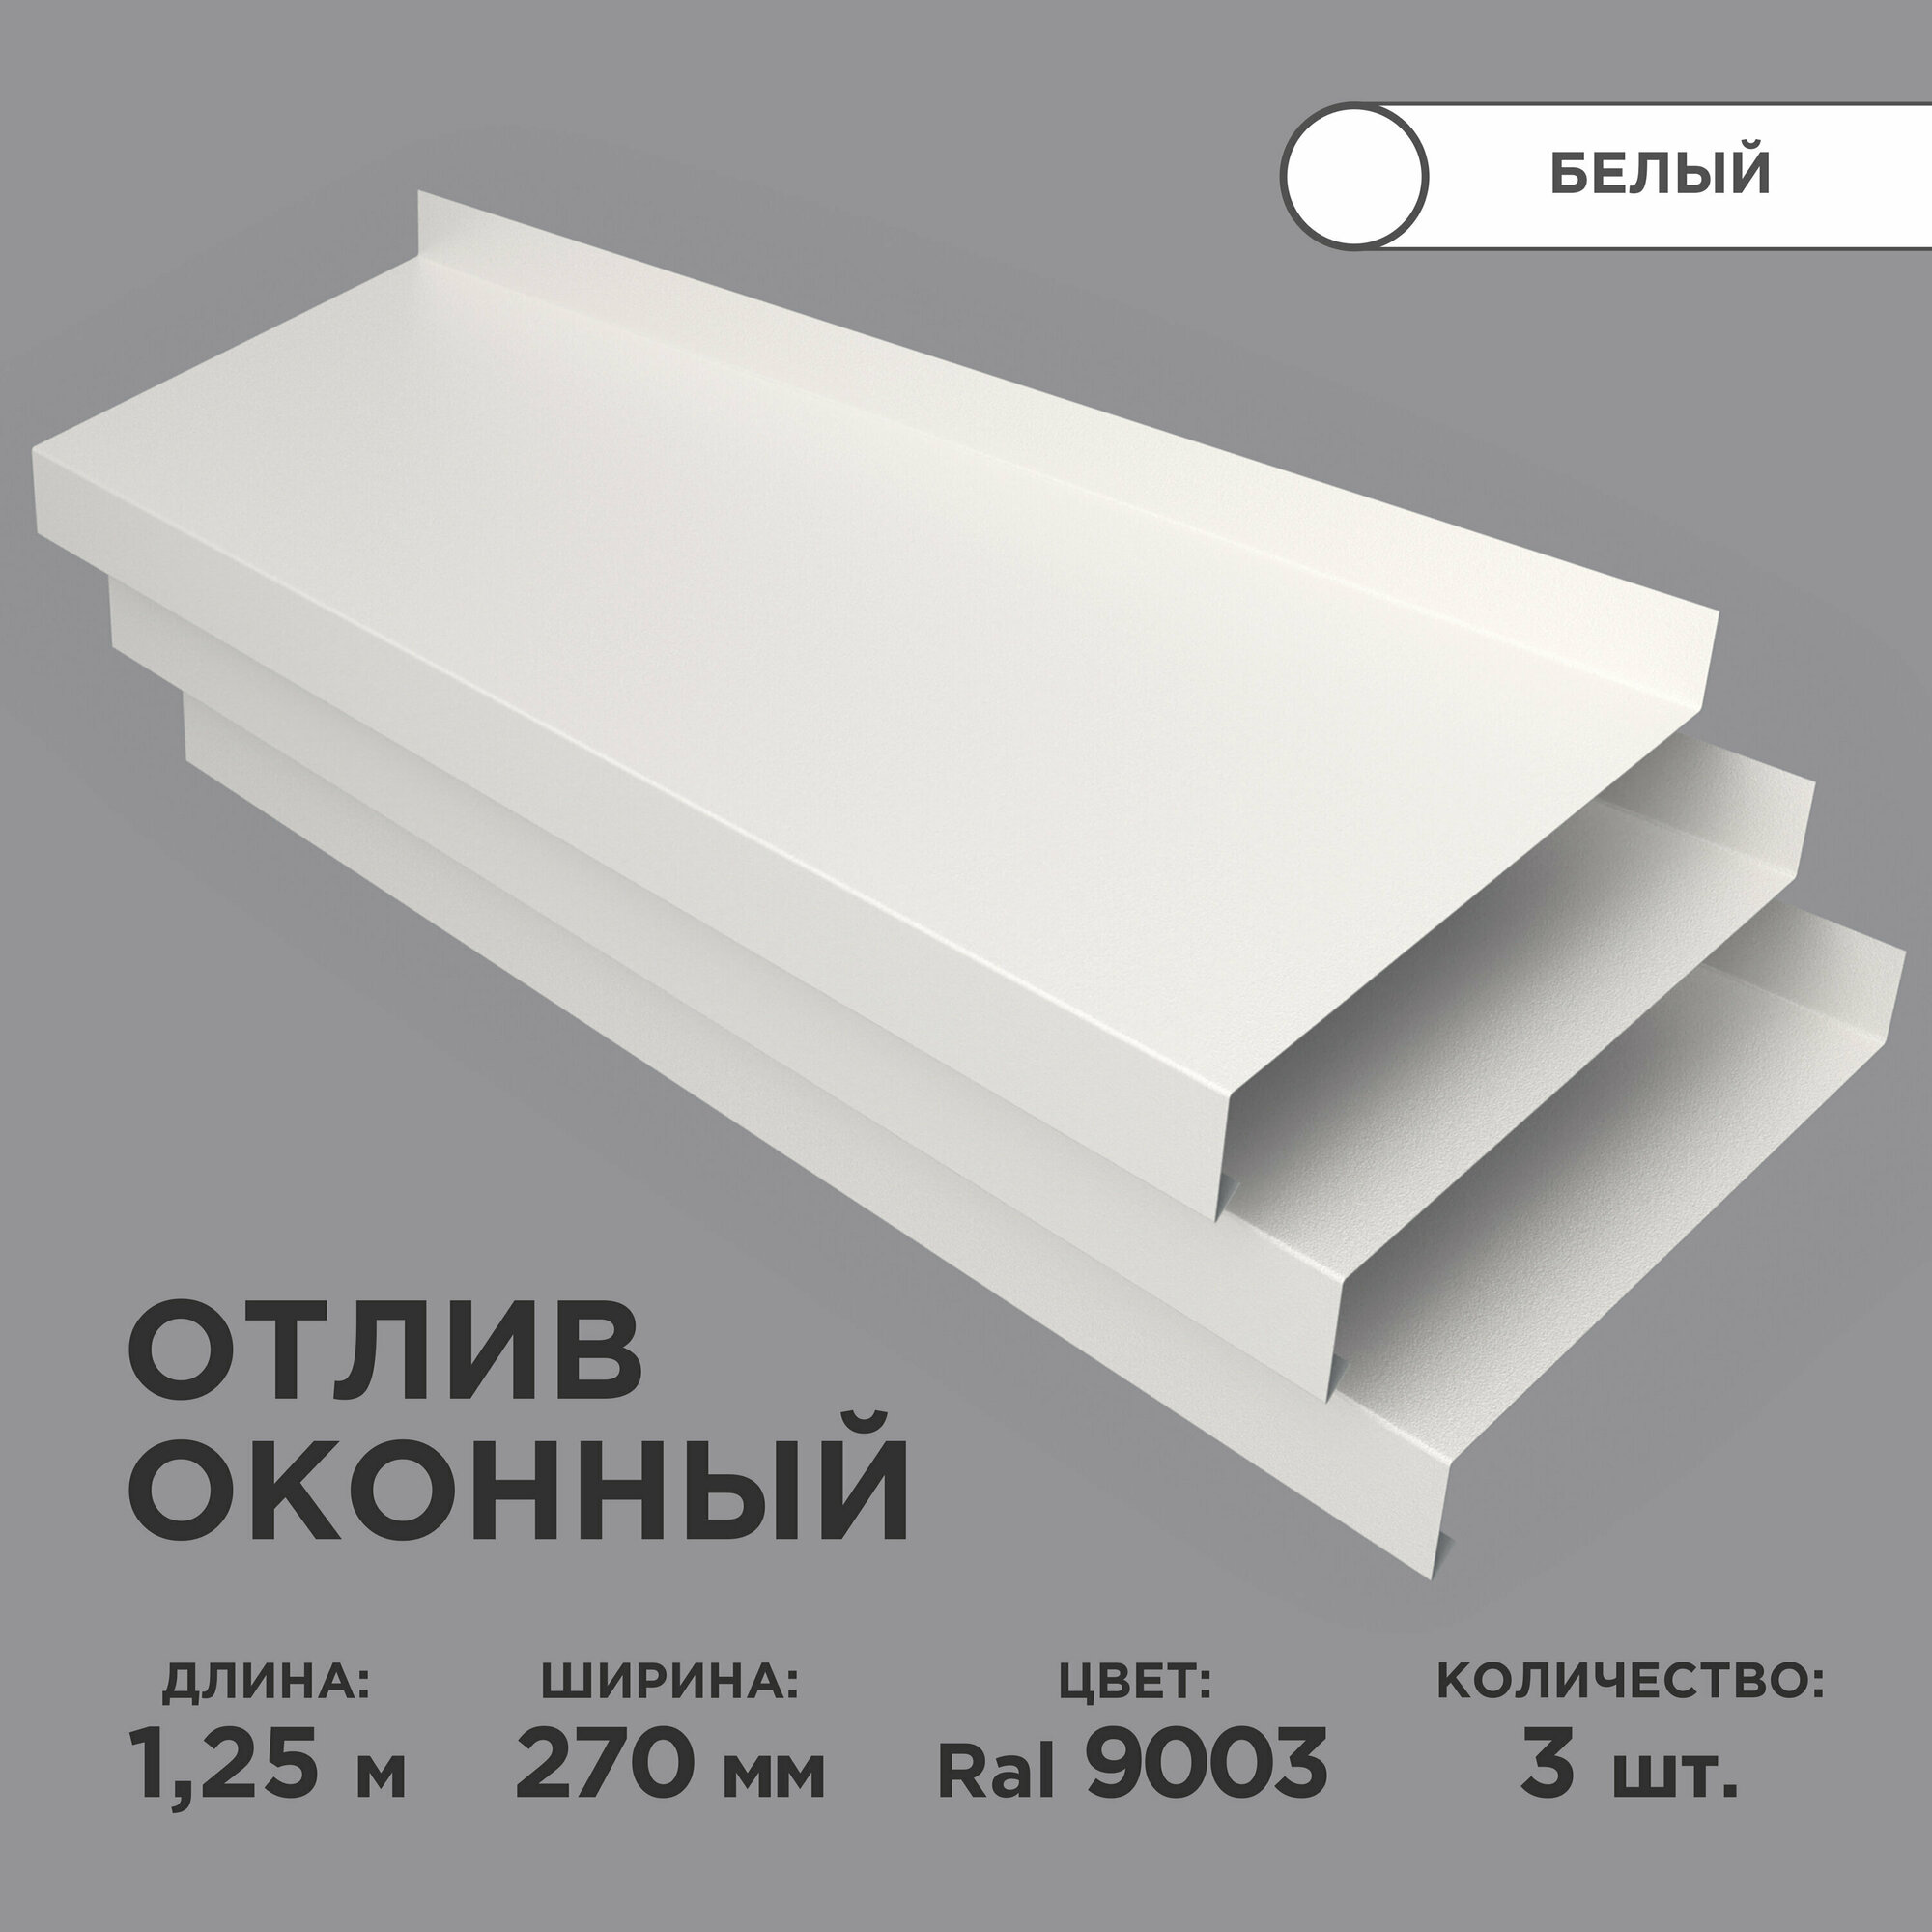 Отлив оконный ширина полки 270мм/ отлив для окна / цвет белый(RAL 9003) Длина 1,25м, 3 штуки в комплекте